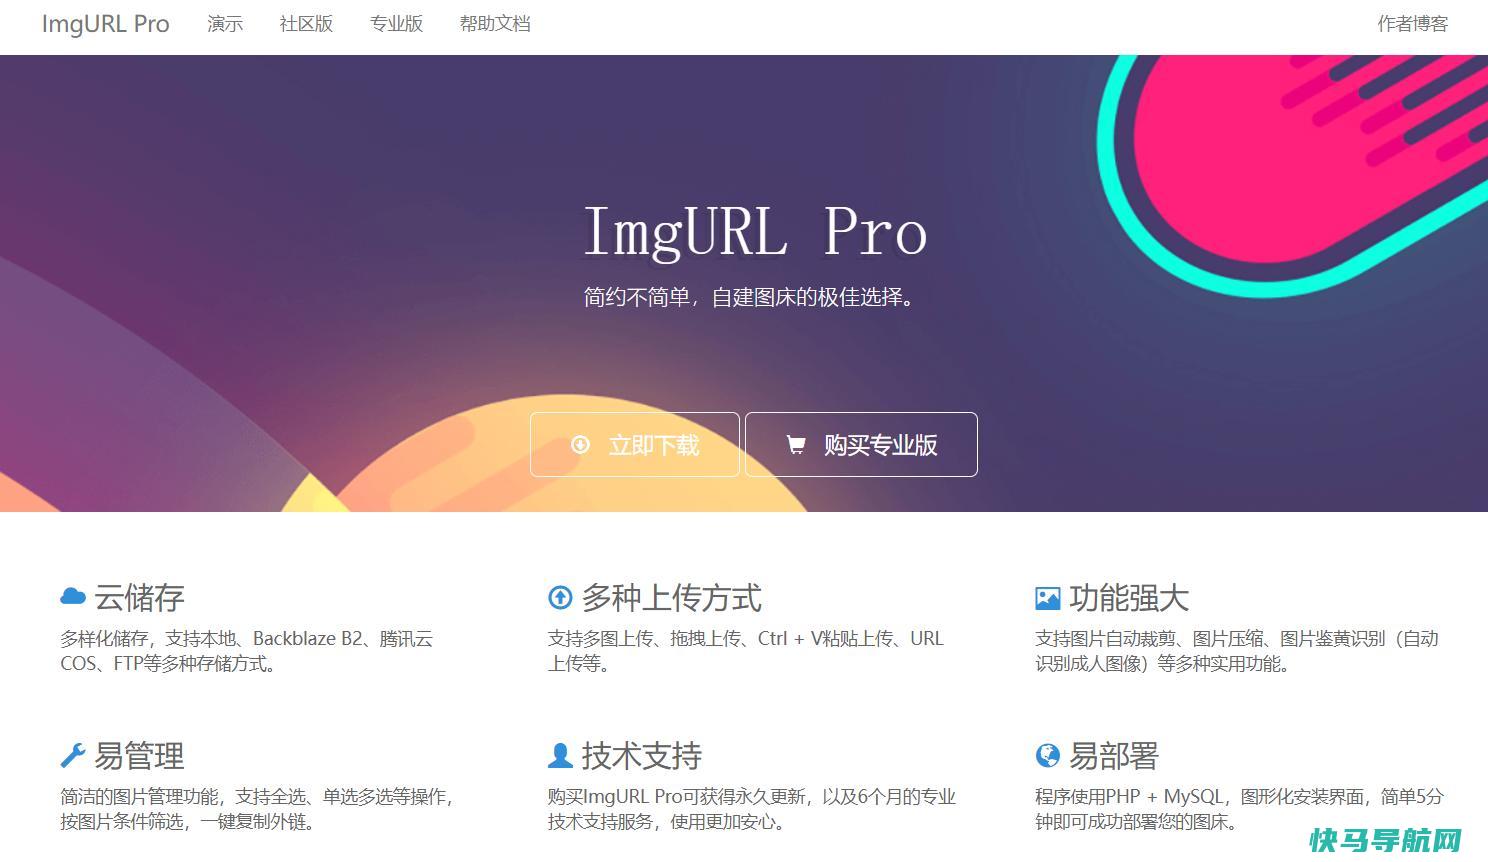 ImgURL Pro专业版图床程序2.3.x更新，已支持相册功能